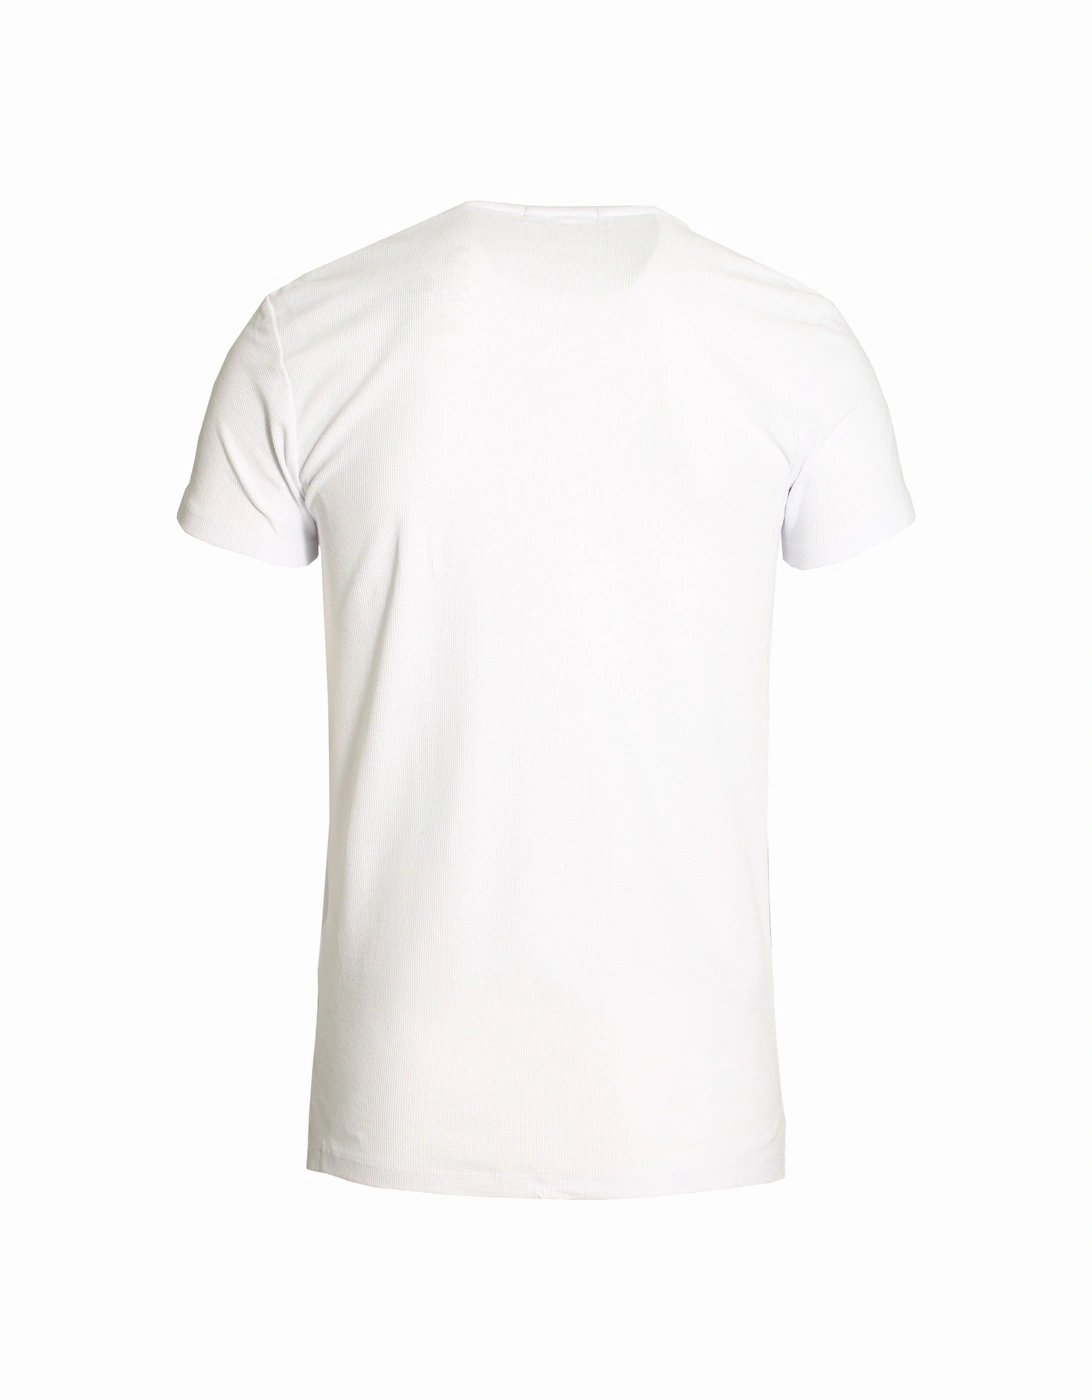 Mirto Pocket T-Shirt | White